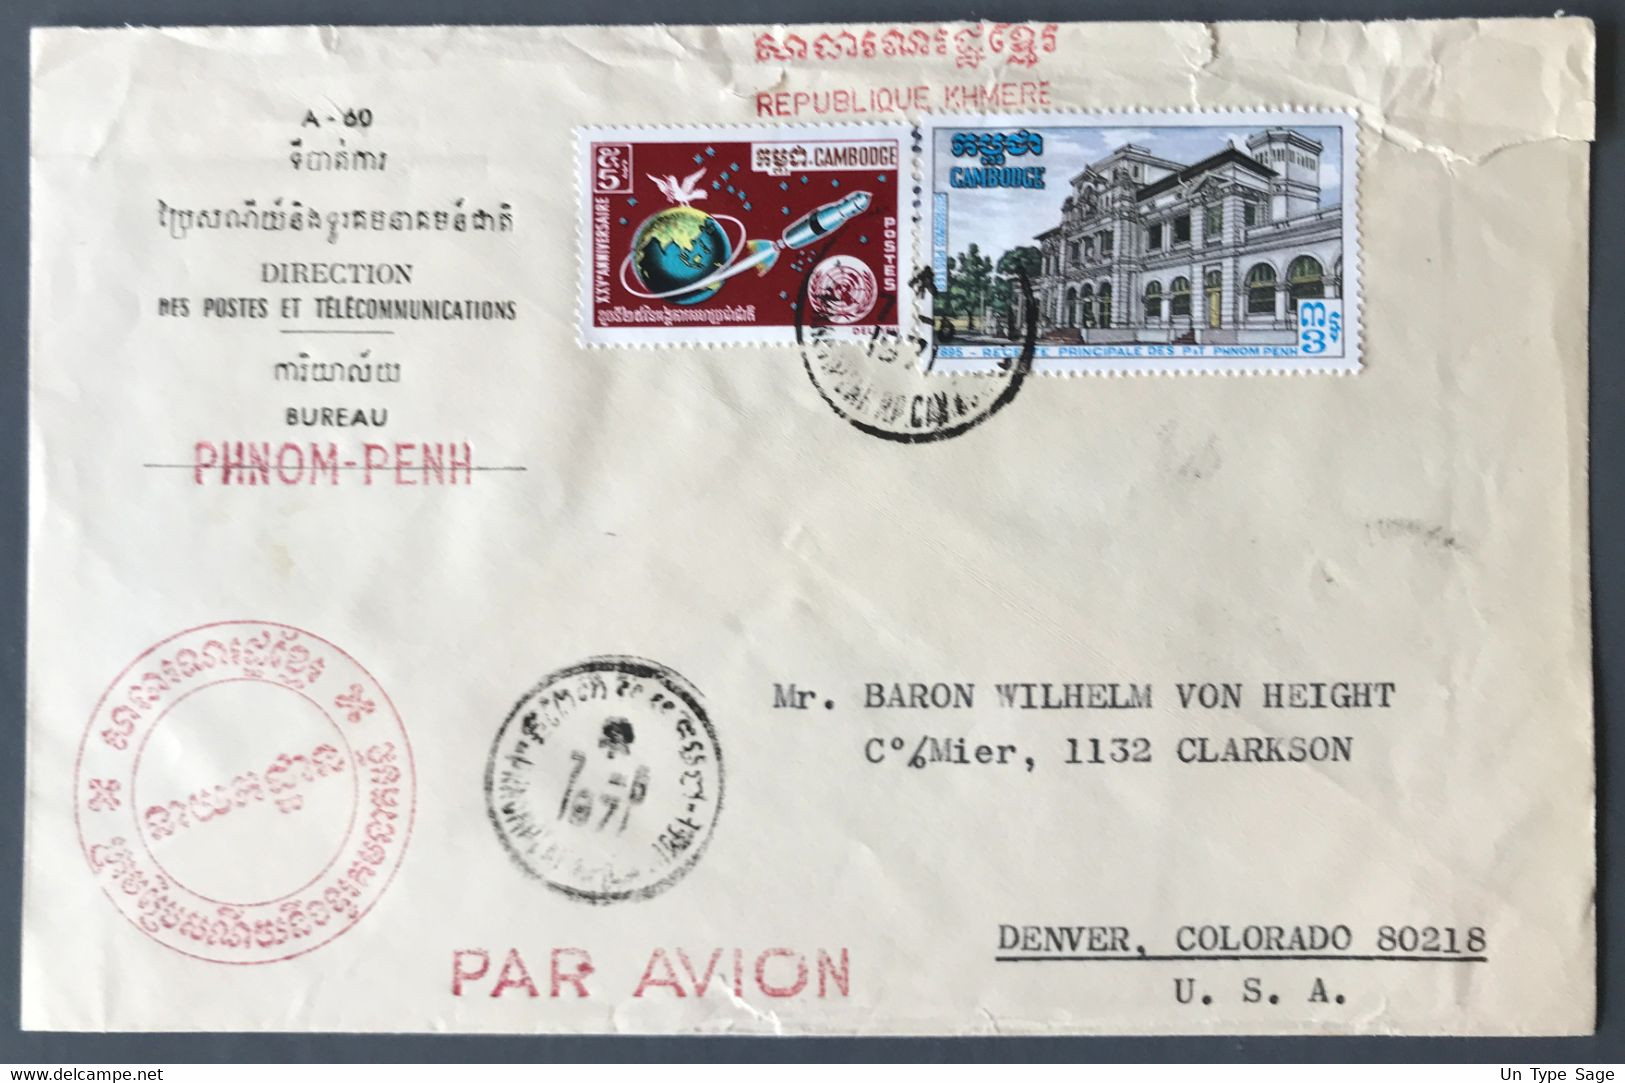 Cambodge Divers Sur Enveloppe, TAD PHNOM PENH 7.6.1971 Pour Denver, USA - (A1072) - Cambodge